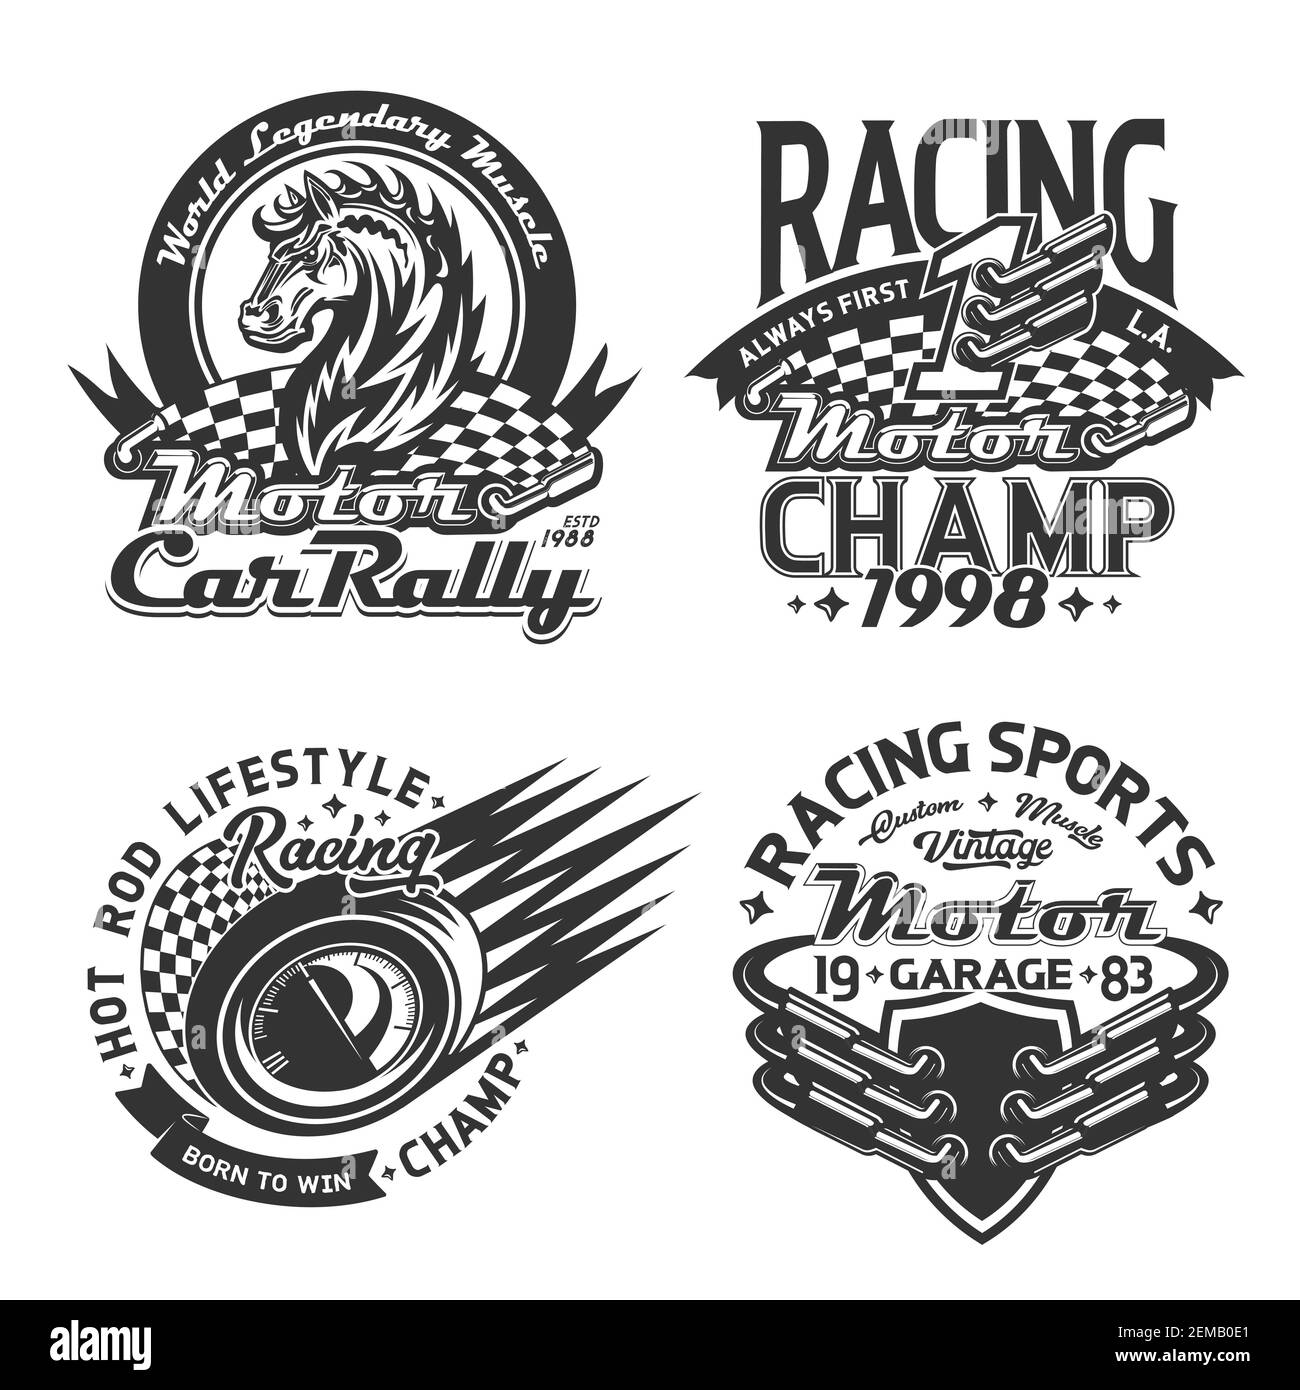 Rennsport und Auto Rallye T-Shirt Print Mockup, Vektor Motorsport  Meisterschaft benutzerdefinierte Kleidung. Start und Ziel Rennflaggen,  wildes Mustang Pferd, rac Stock-Vektorgrafik - Alamy